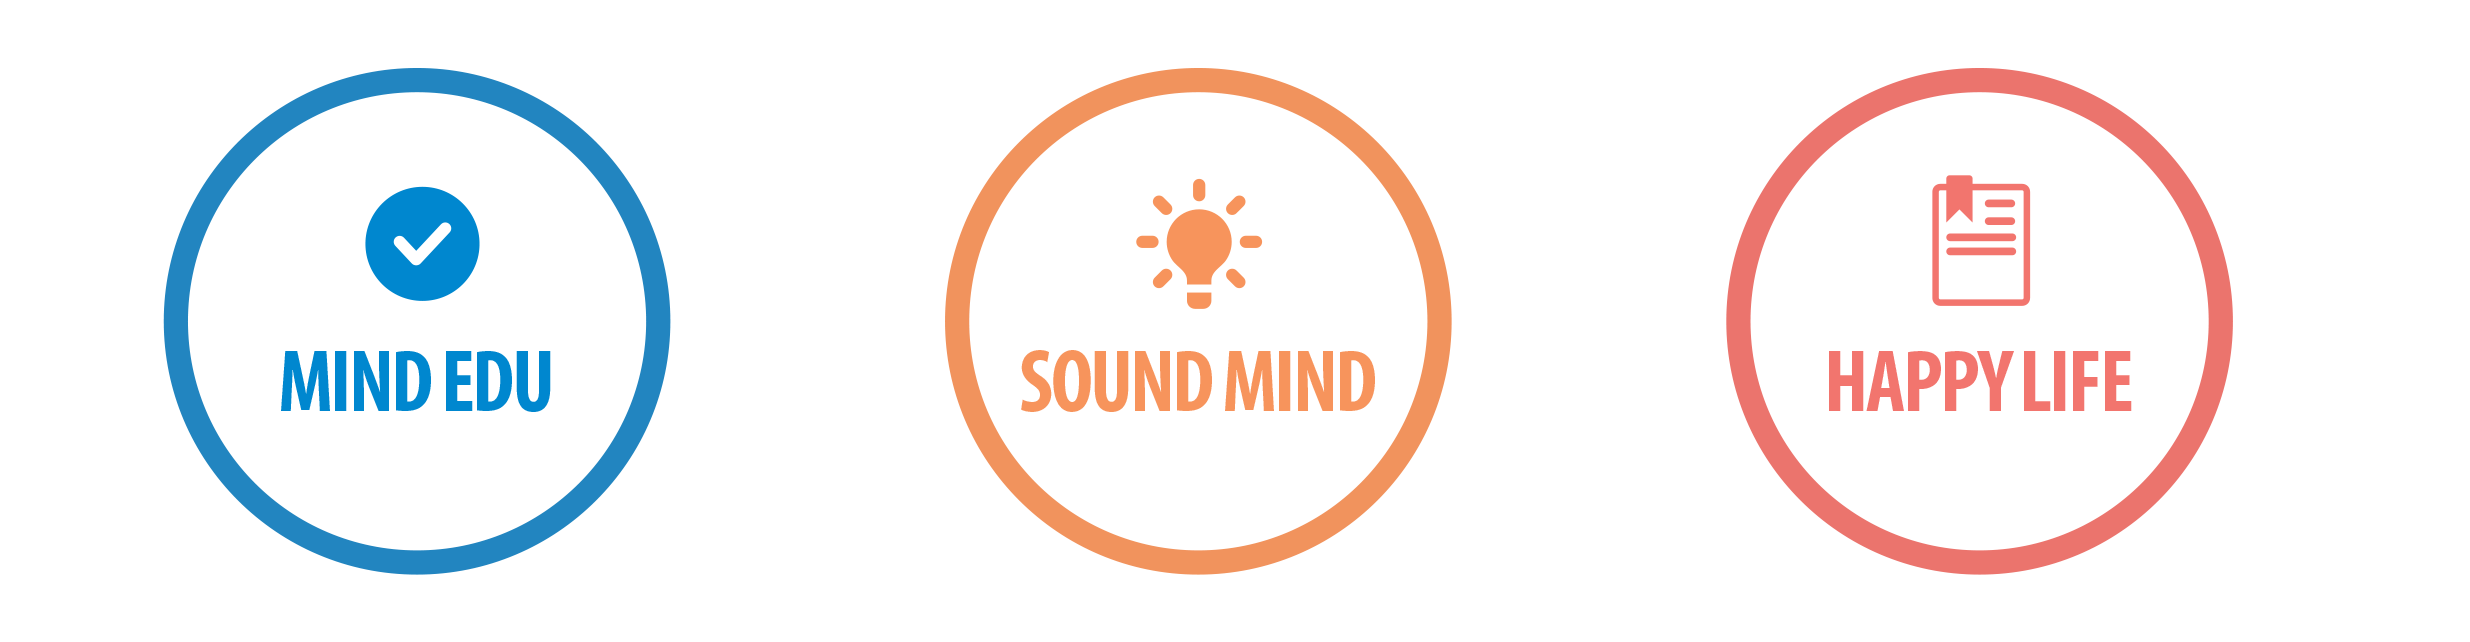 mind education for sound mind.png